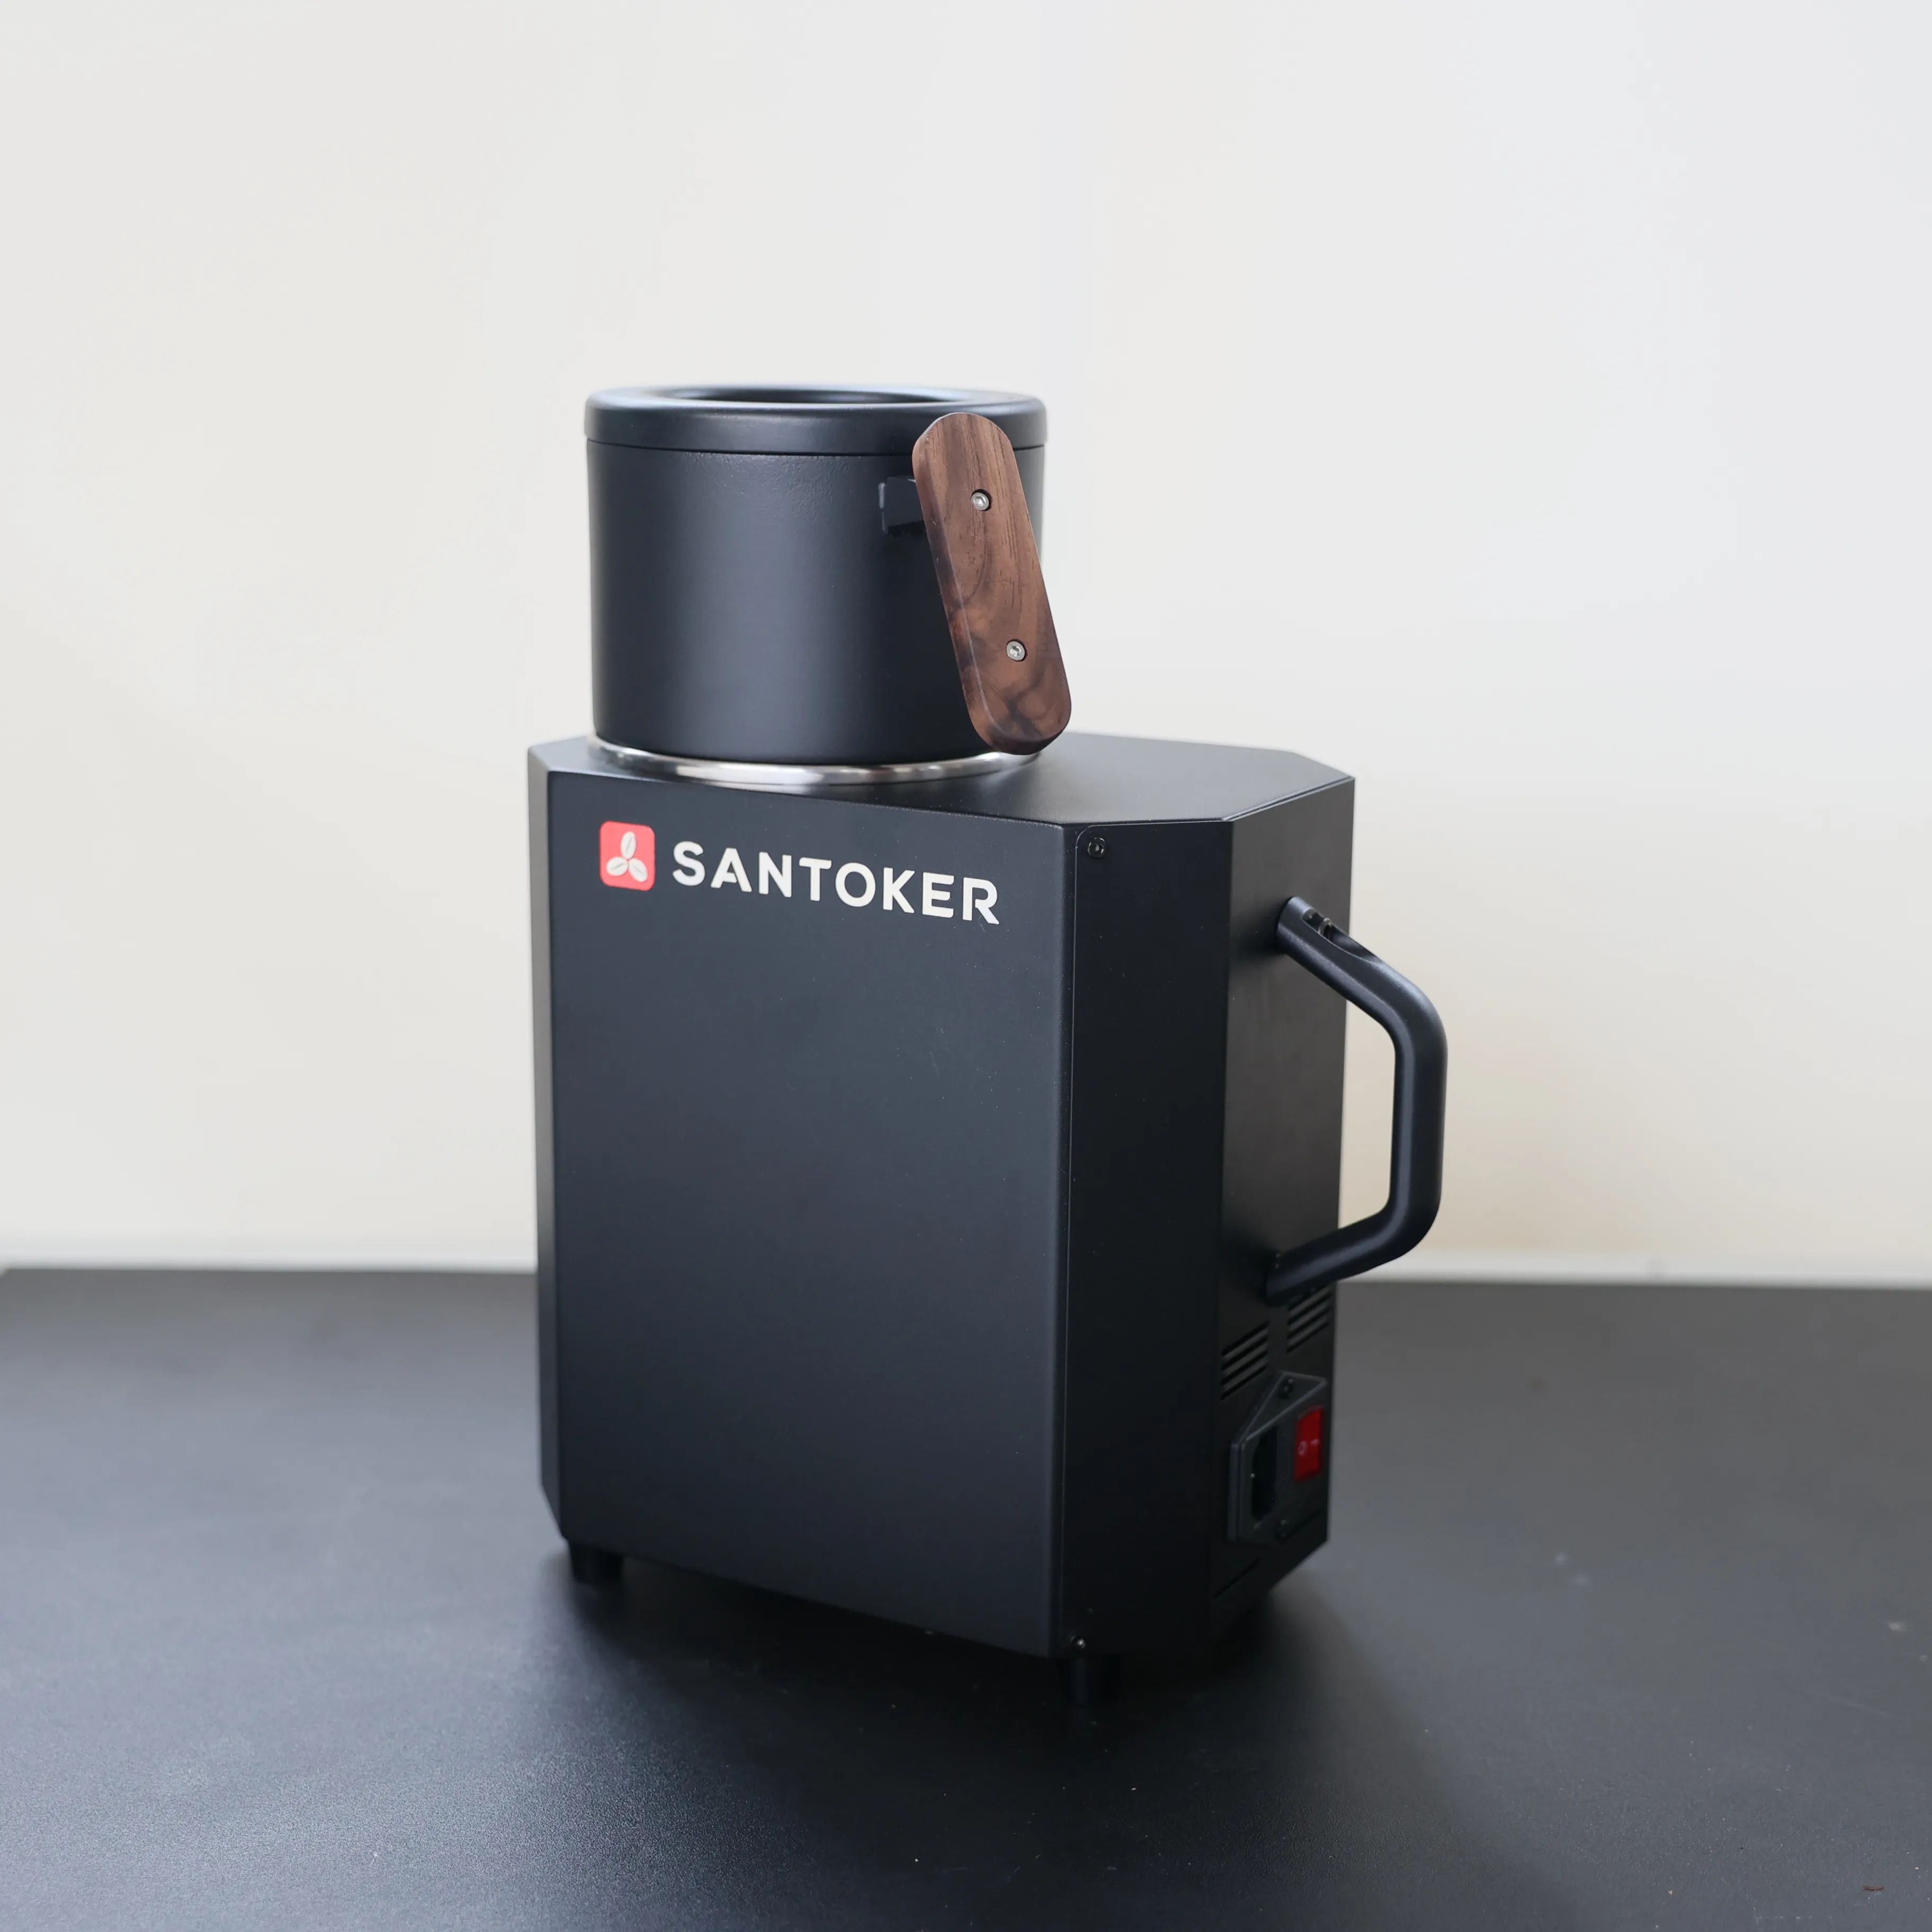 SANTOKER Cube10 100 גרם קליית קפה אוטומטית באוויר חם מכונת קפה מסחרית קטנה בלוטות' חכמה מכונת קליית קפה